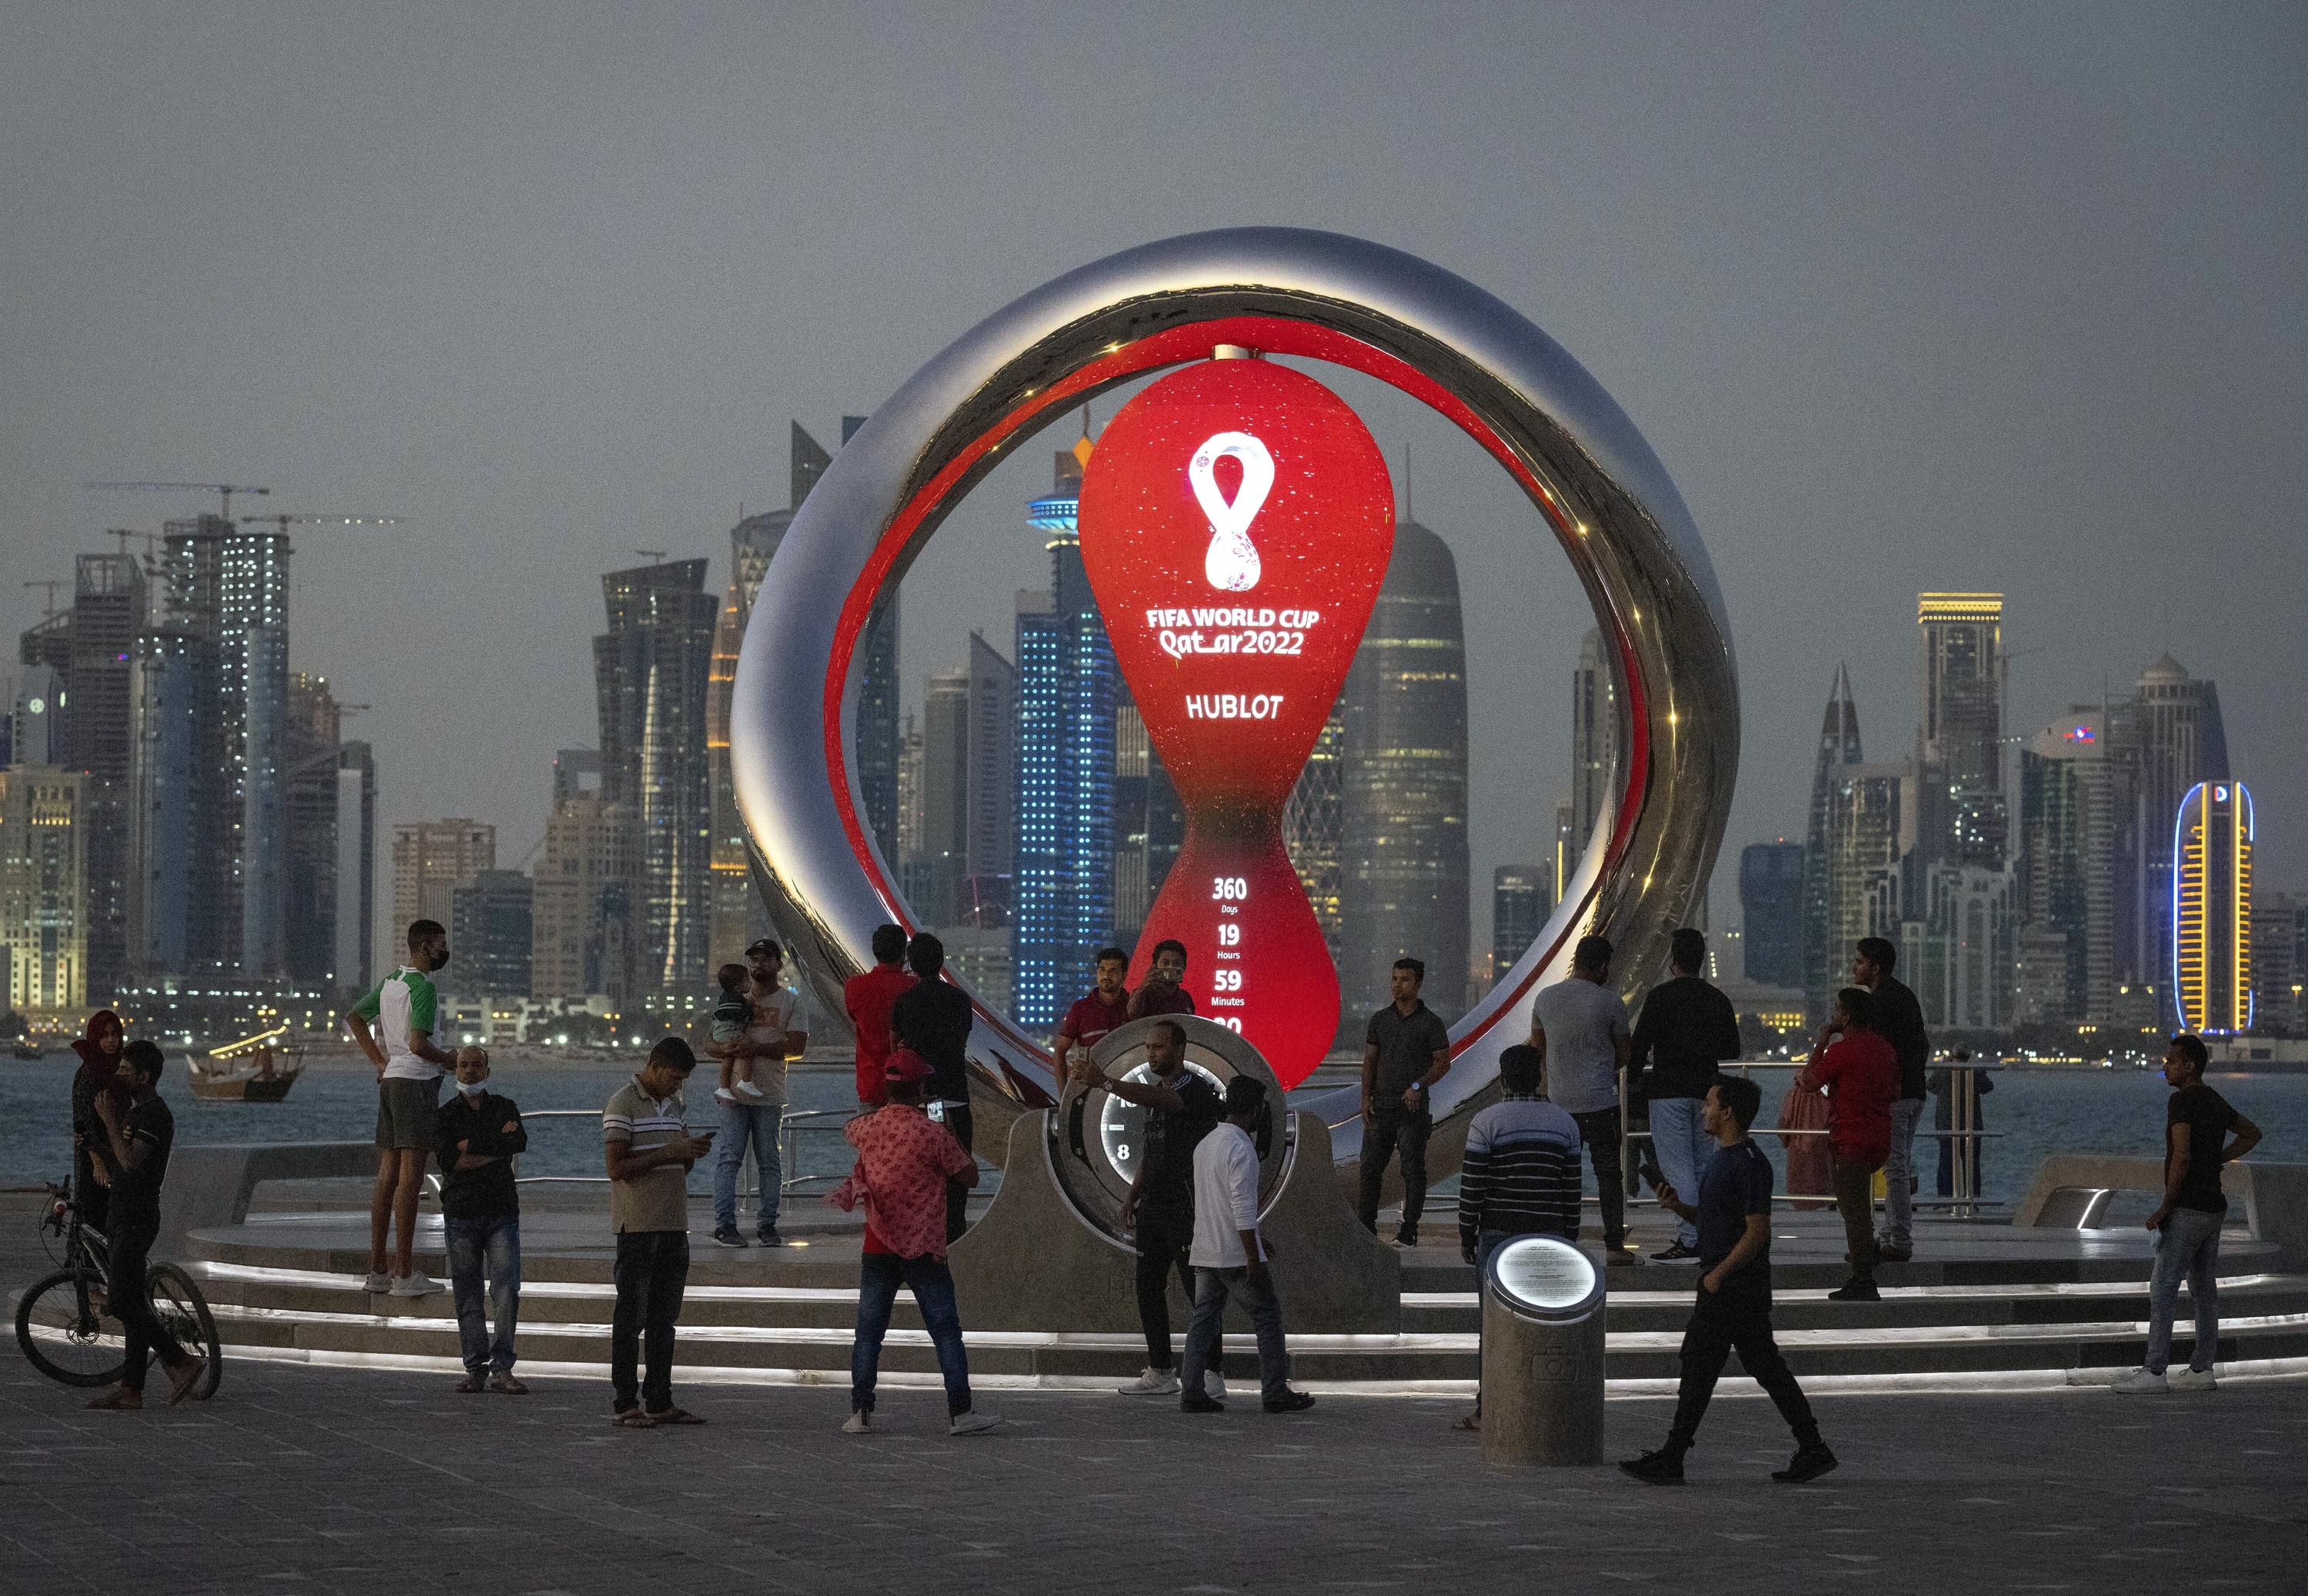 Les supporters de la Coupe du monde pourraient apporter des tensions politiques au calme au Qatar